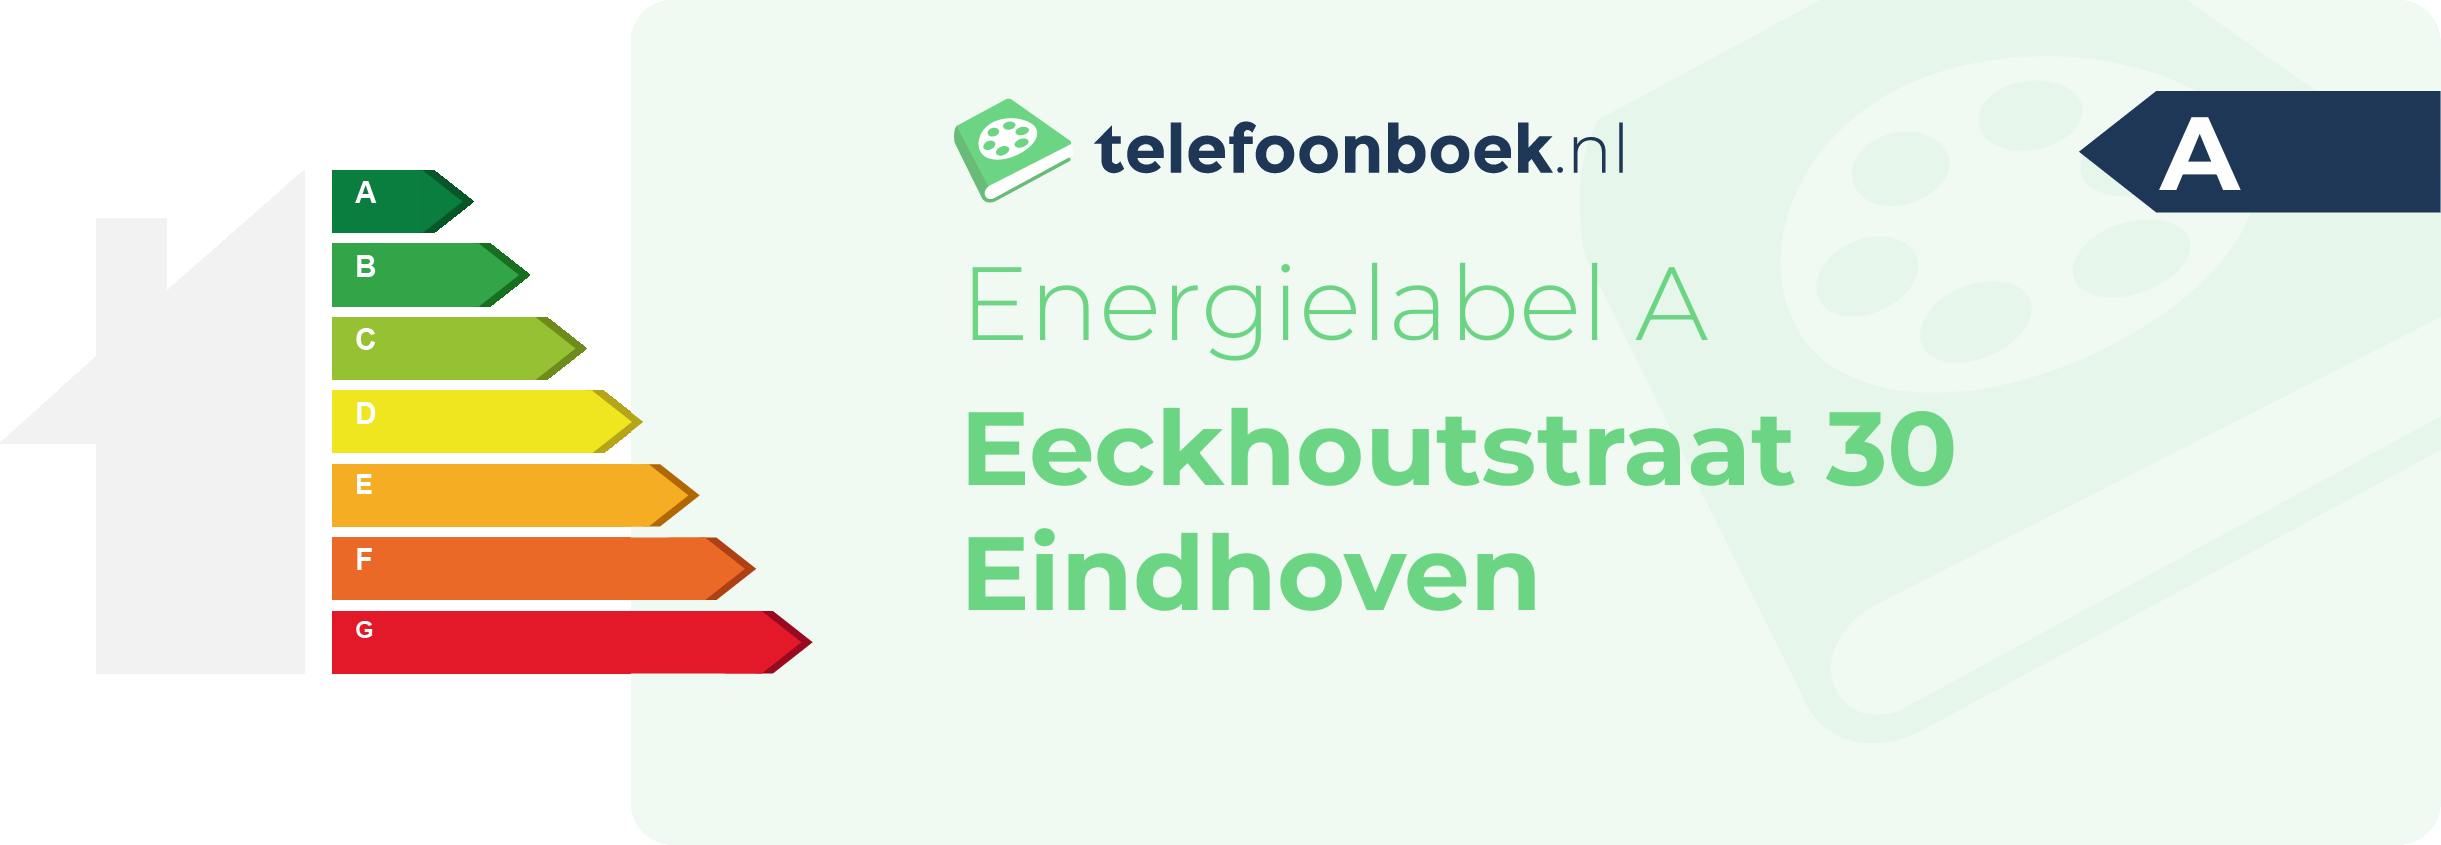 Energielabel Eeckhoutstraat 30 Eindhoven